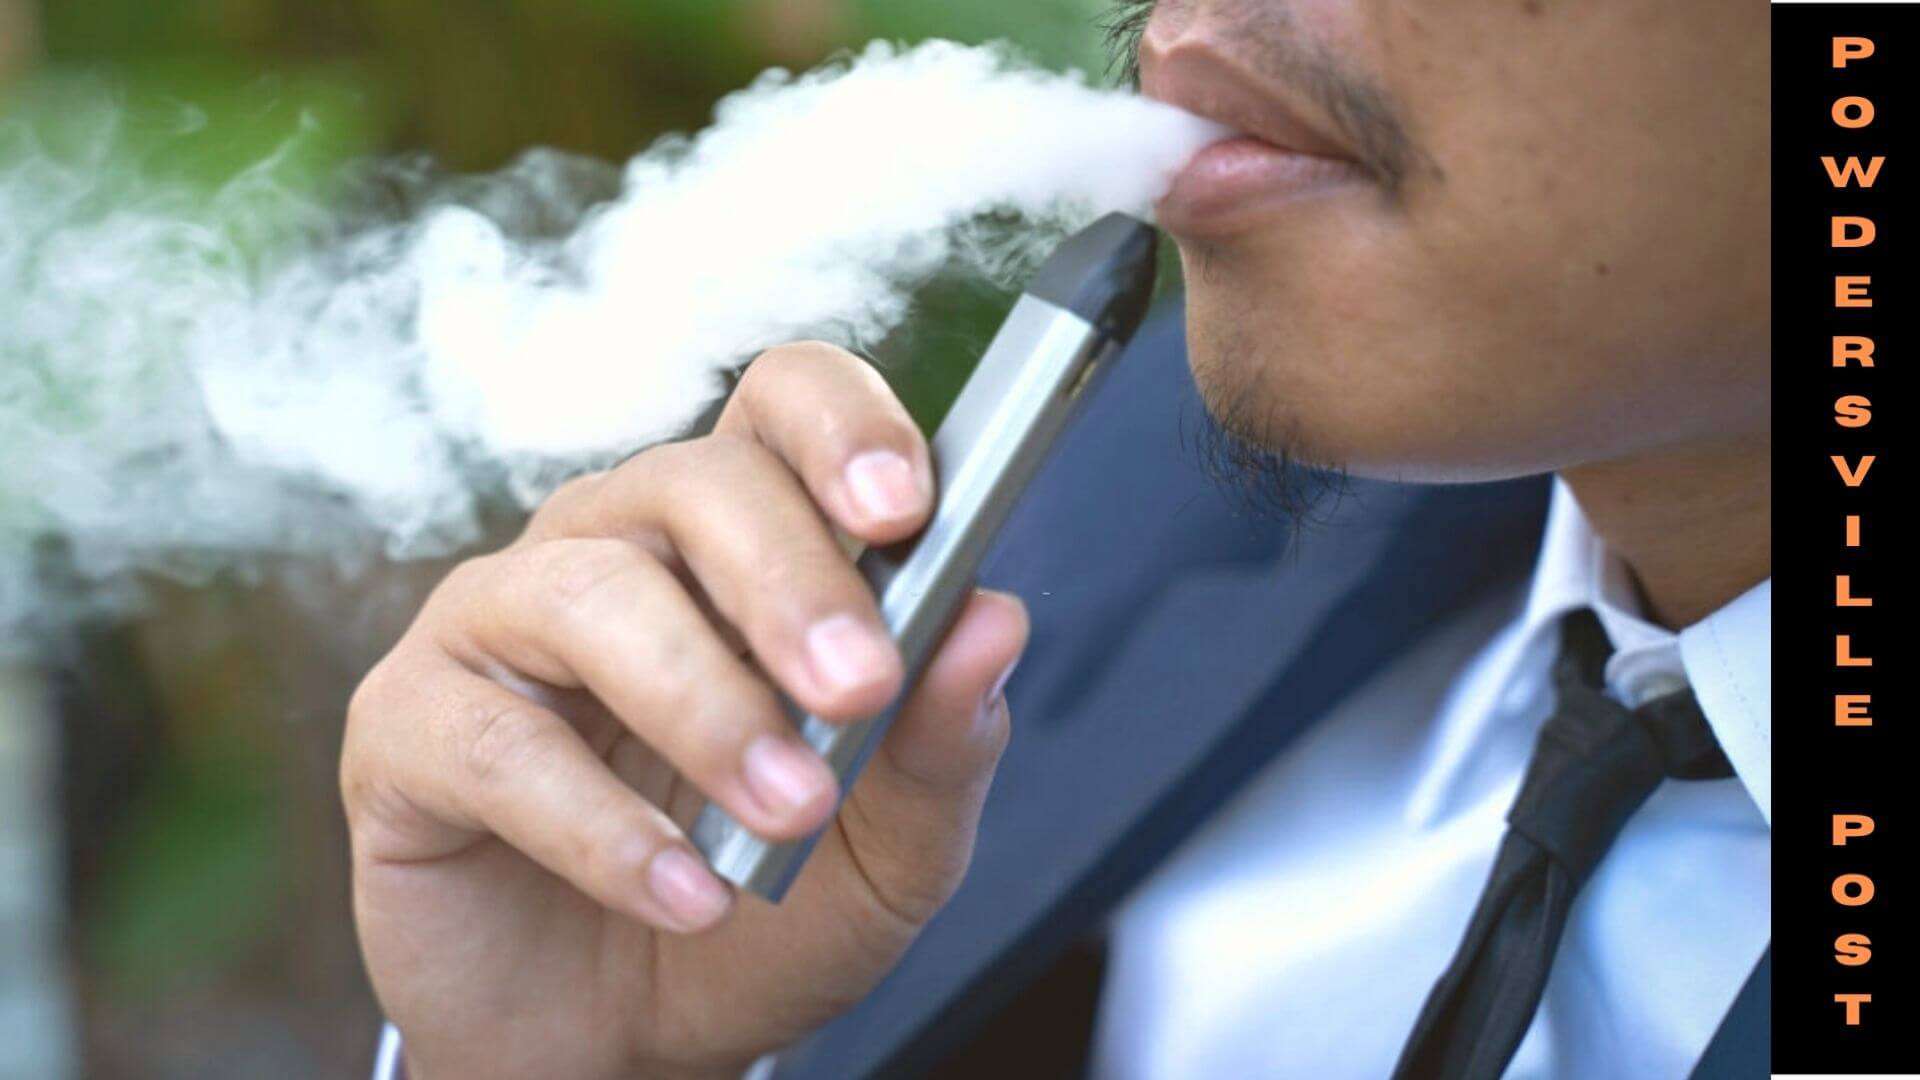 Covid Symptoms Are More Among E-cigarette Users